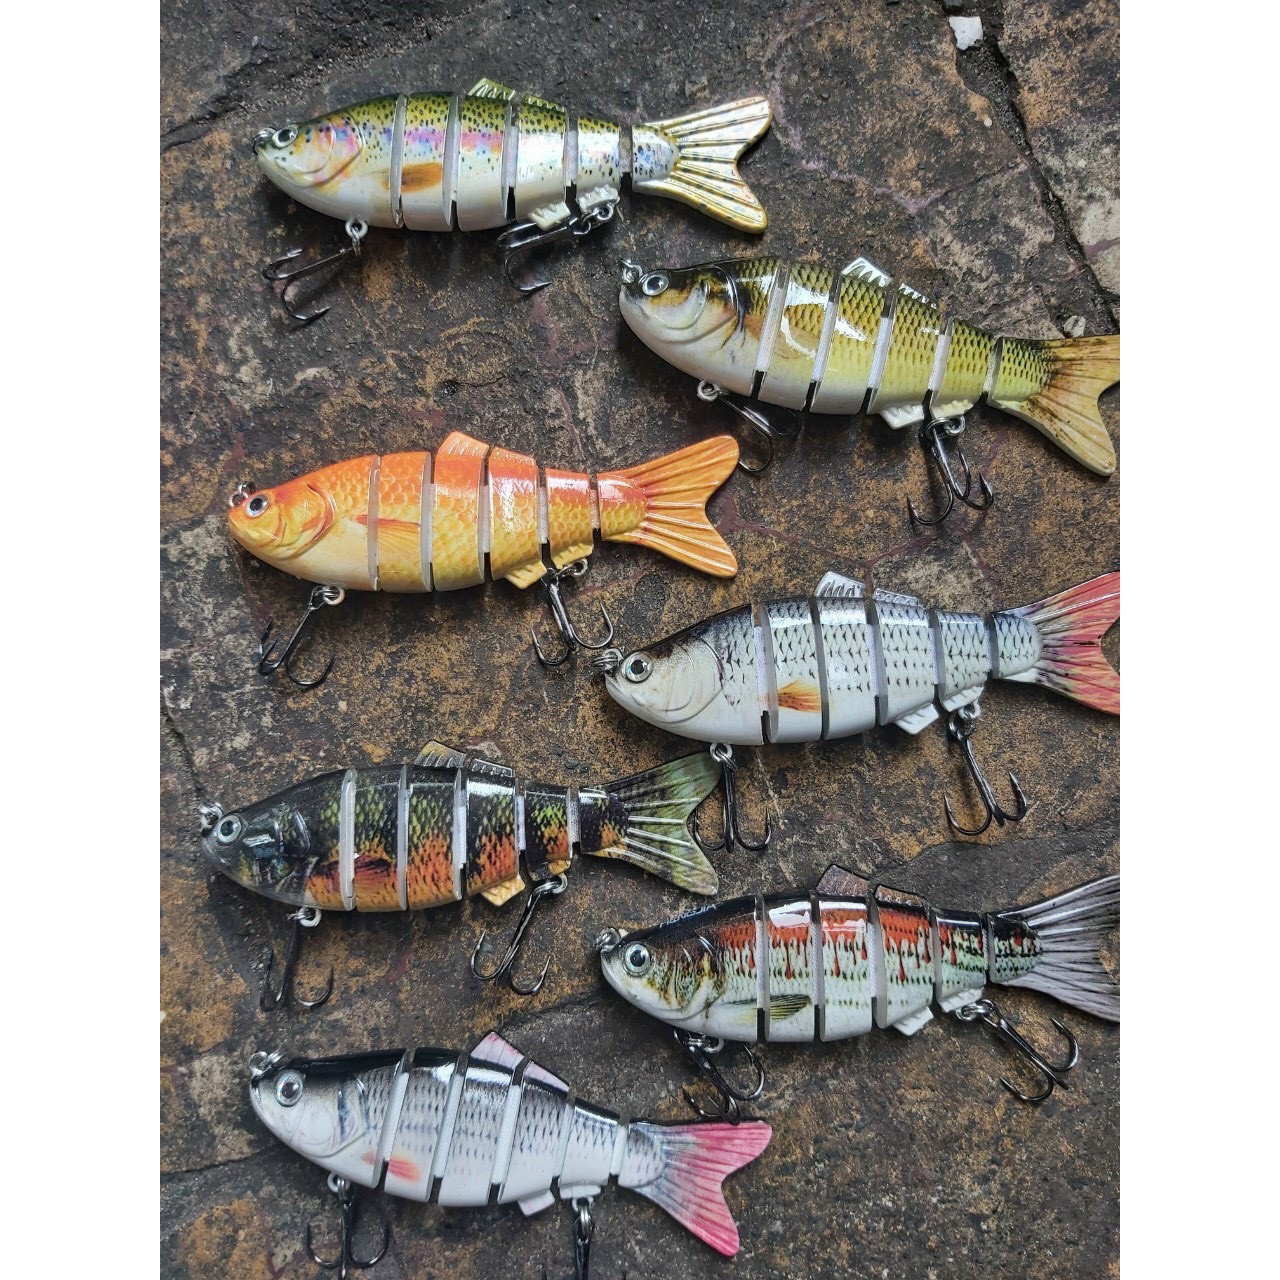 Mồi Câu Cá Giả Hình Cá 6 Khúc của Nhật Dùng câu lure ở biển,ao ,hồ,các loài cá săn mồi ( Giao màu ngẫu nhiên)